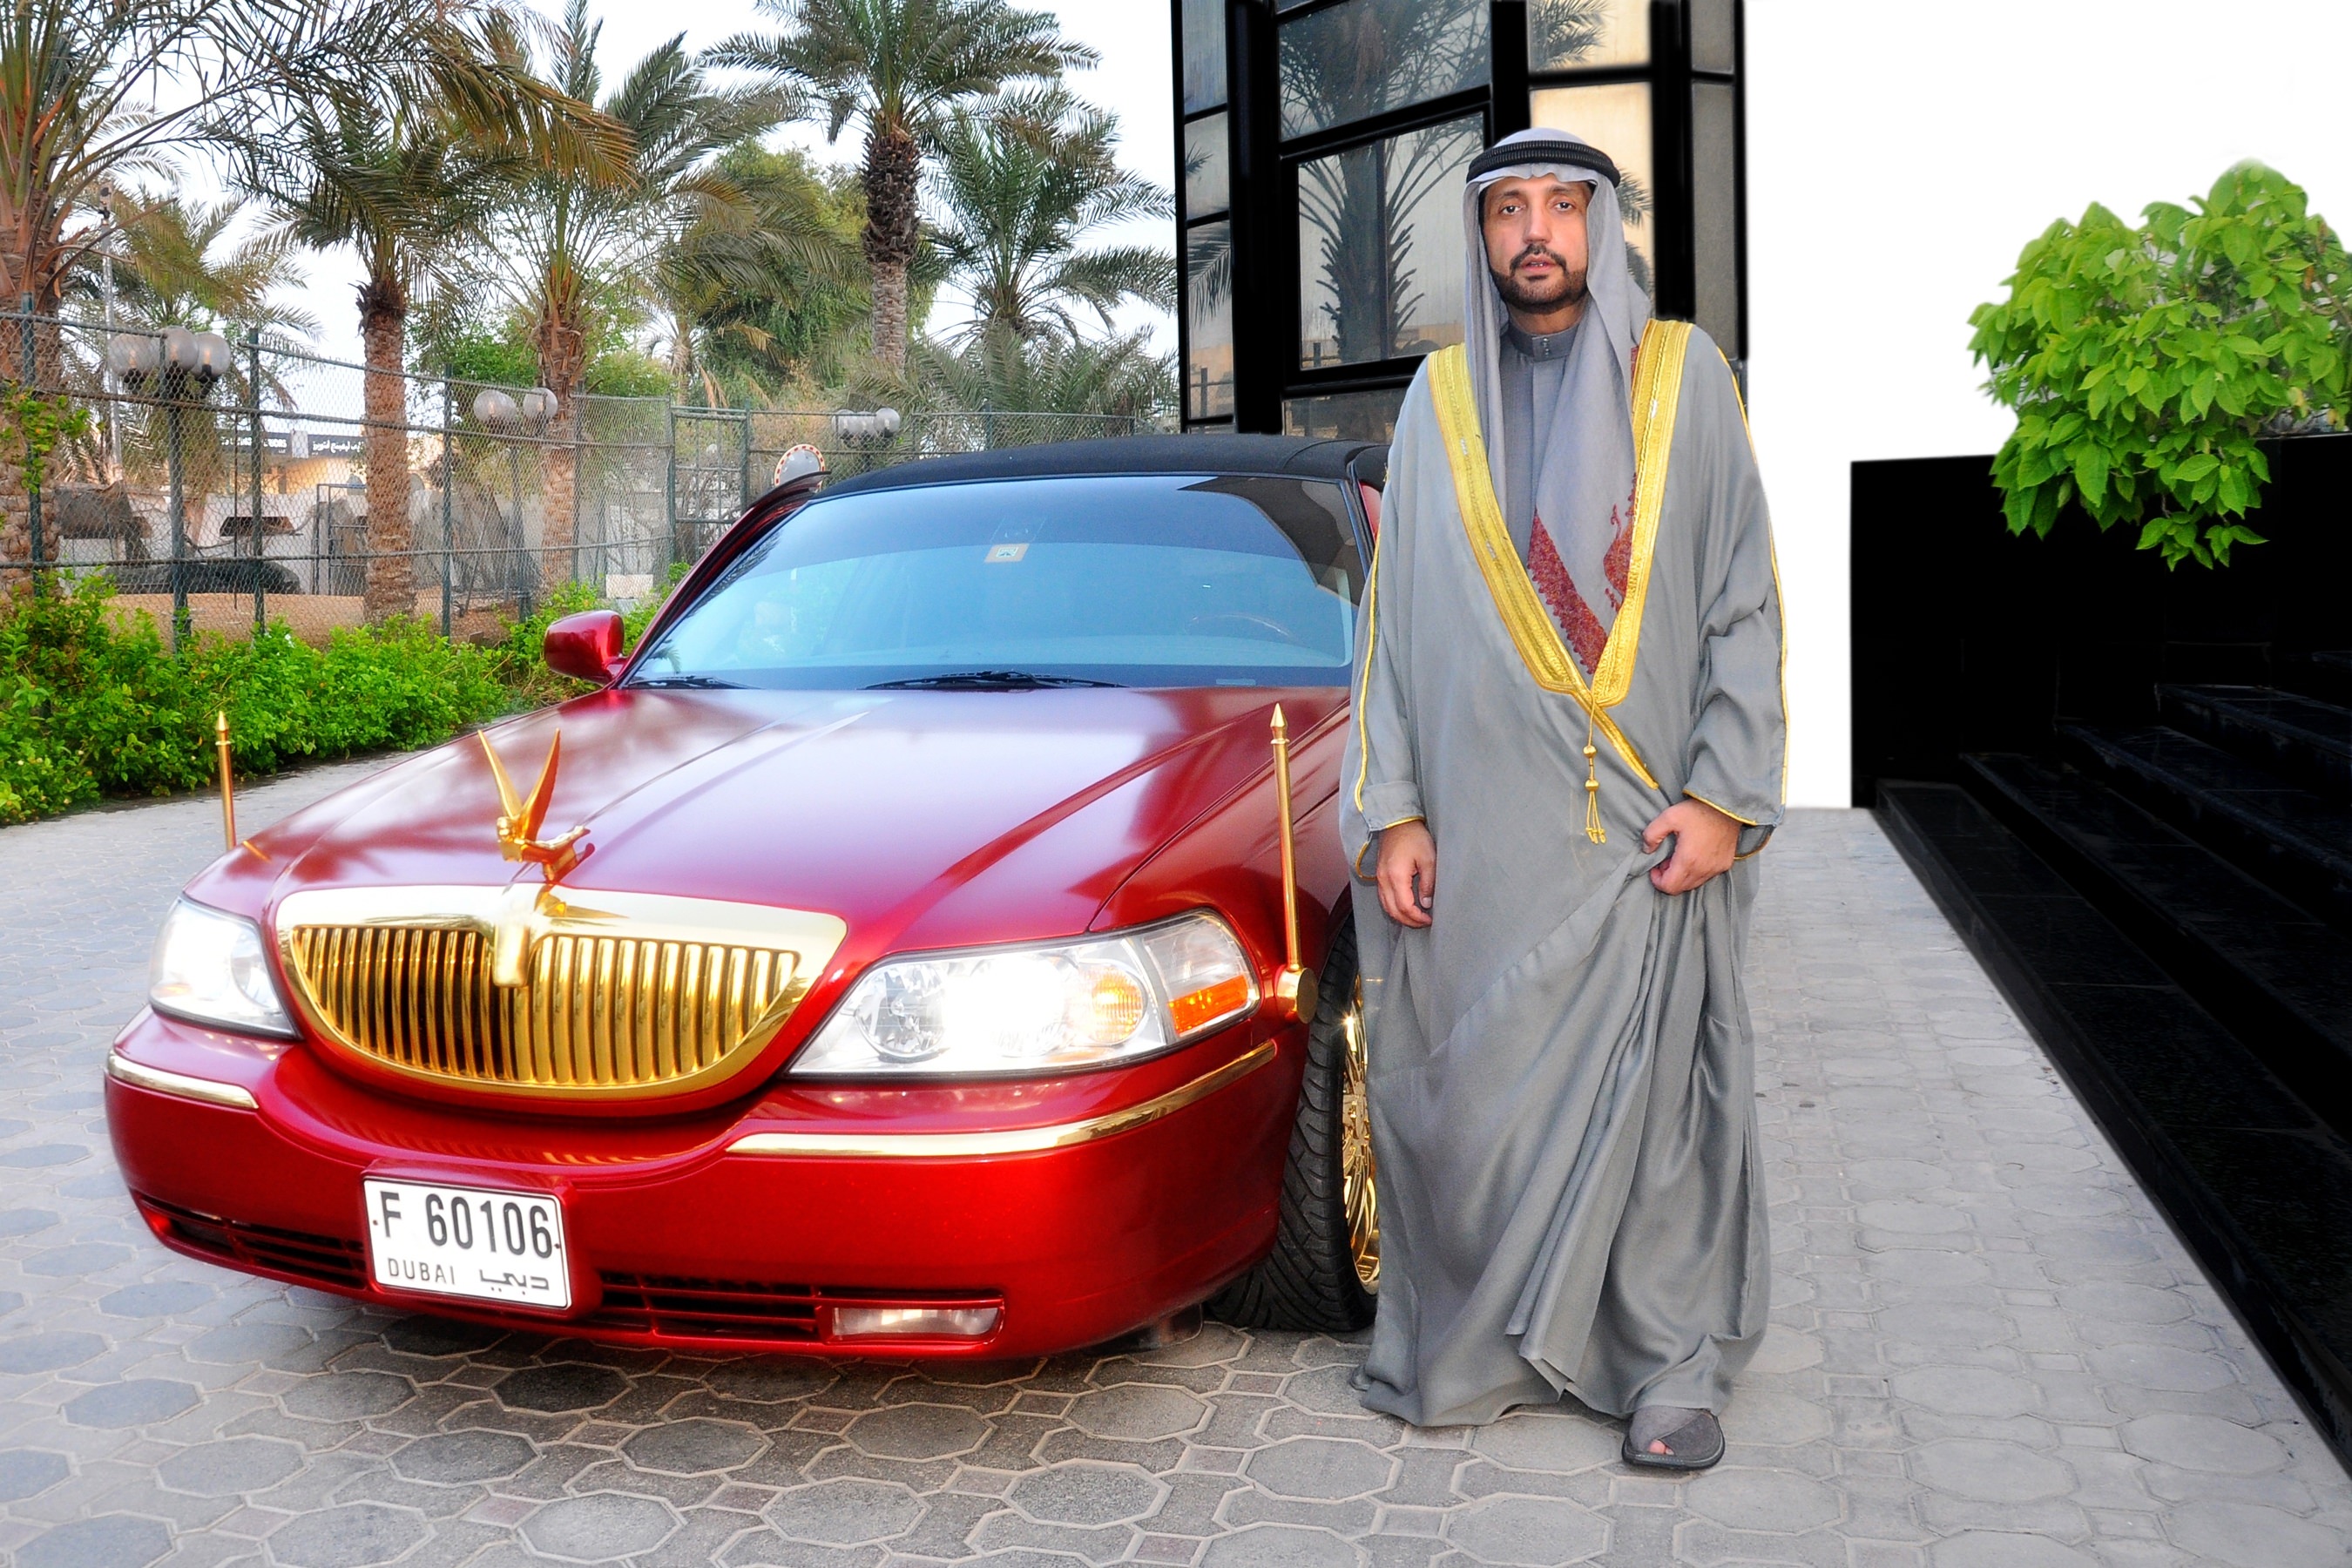 Купить в дубае с доставкой. Майбах шейха ОАЭ. 2003 Lincoln Town car Cartier l. Золотой Мерседес арабского шейха. Машина короля Саудовской Аравии.